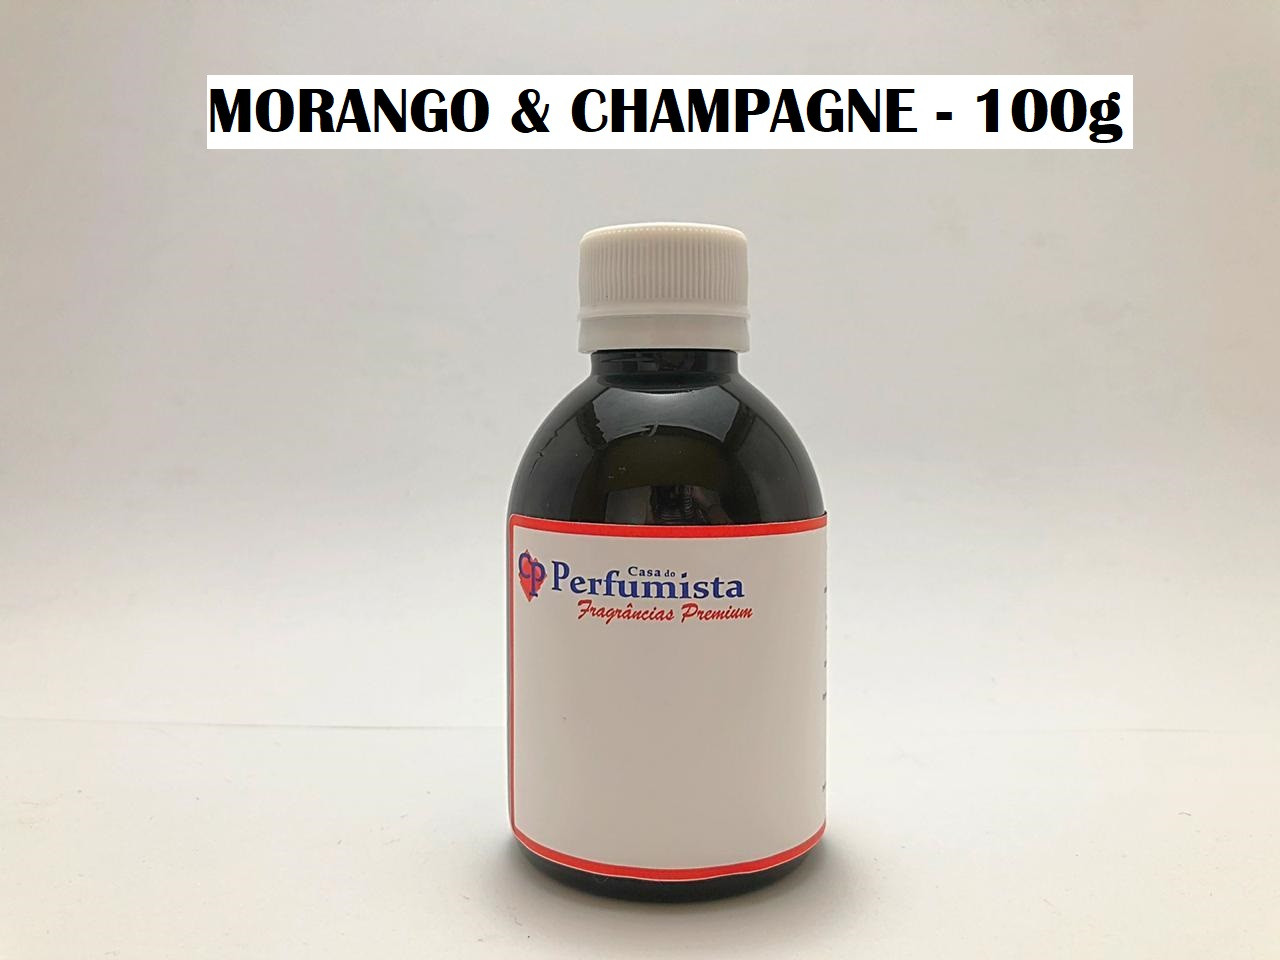 MORANGO E CHAMPAGNE - 100g